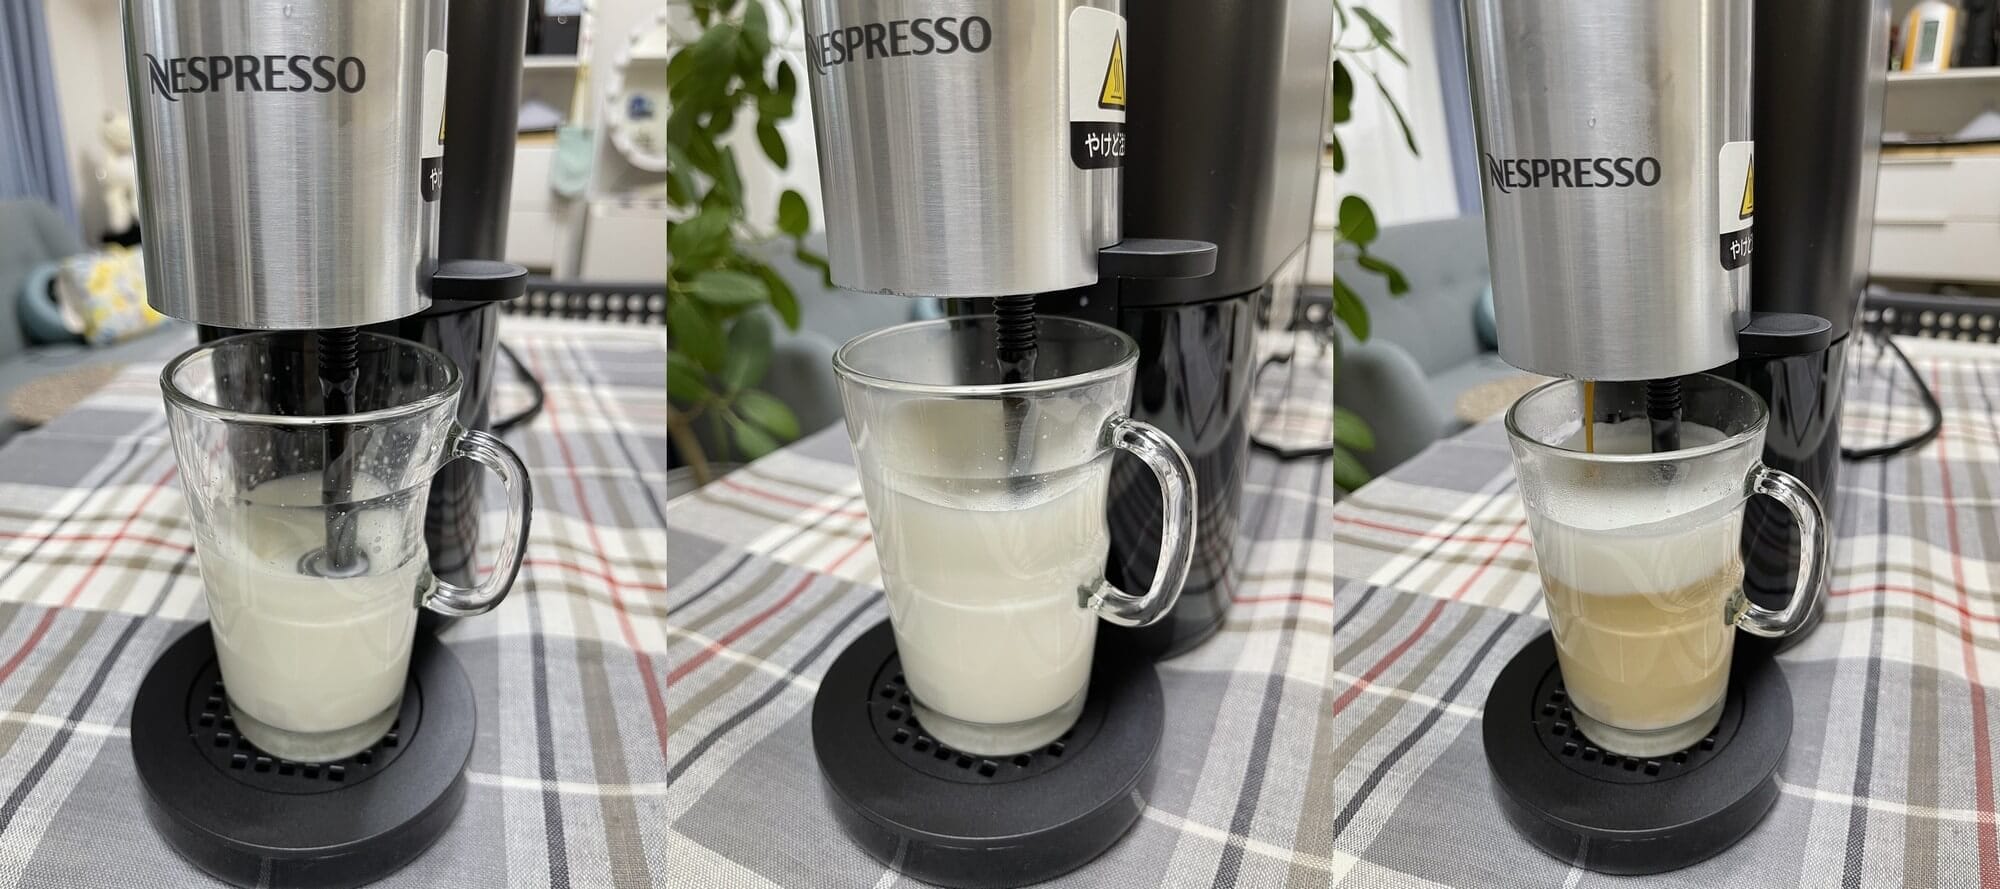 本体にミルクフォーマー（泡だて器）をセットしたら、ミルクの浸るように位置を下げてから、カプチーノボタンを押します。スチームでミルクを温めながら攪拌し、ふわふわのフォームミルクを作った後、コーヒーの抽出が始まります